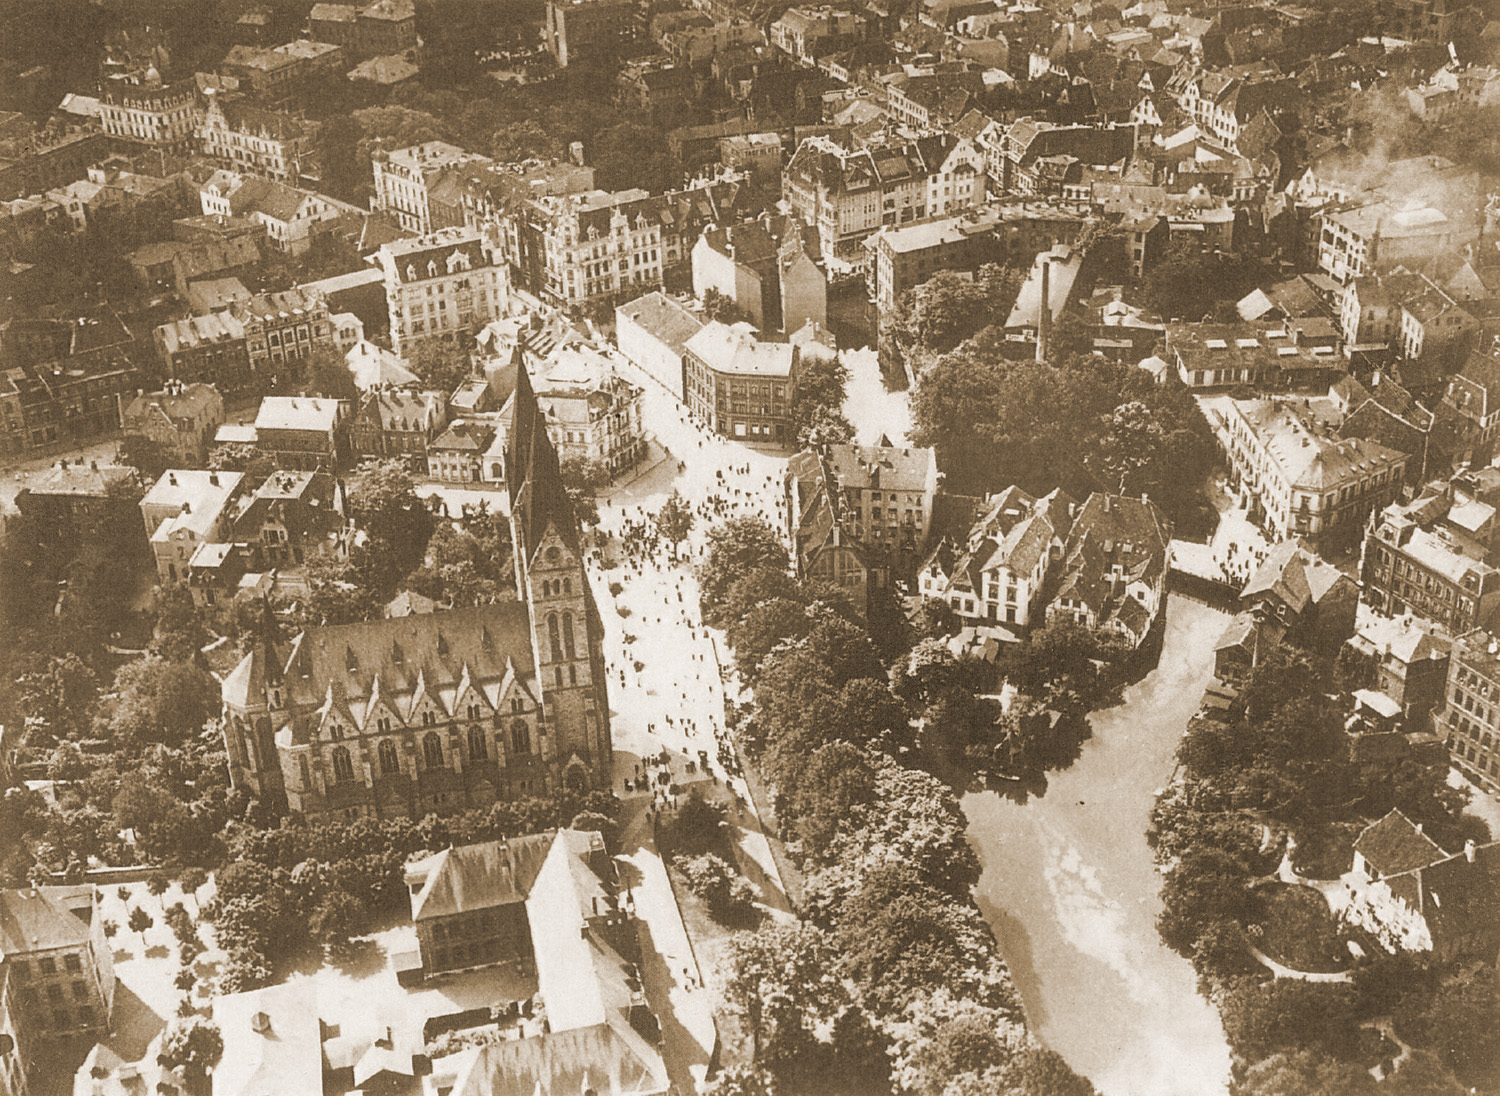 Luftaufnahme von 1915 der Osnabrücker Innenstadt mit Blick auf L&T